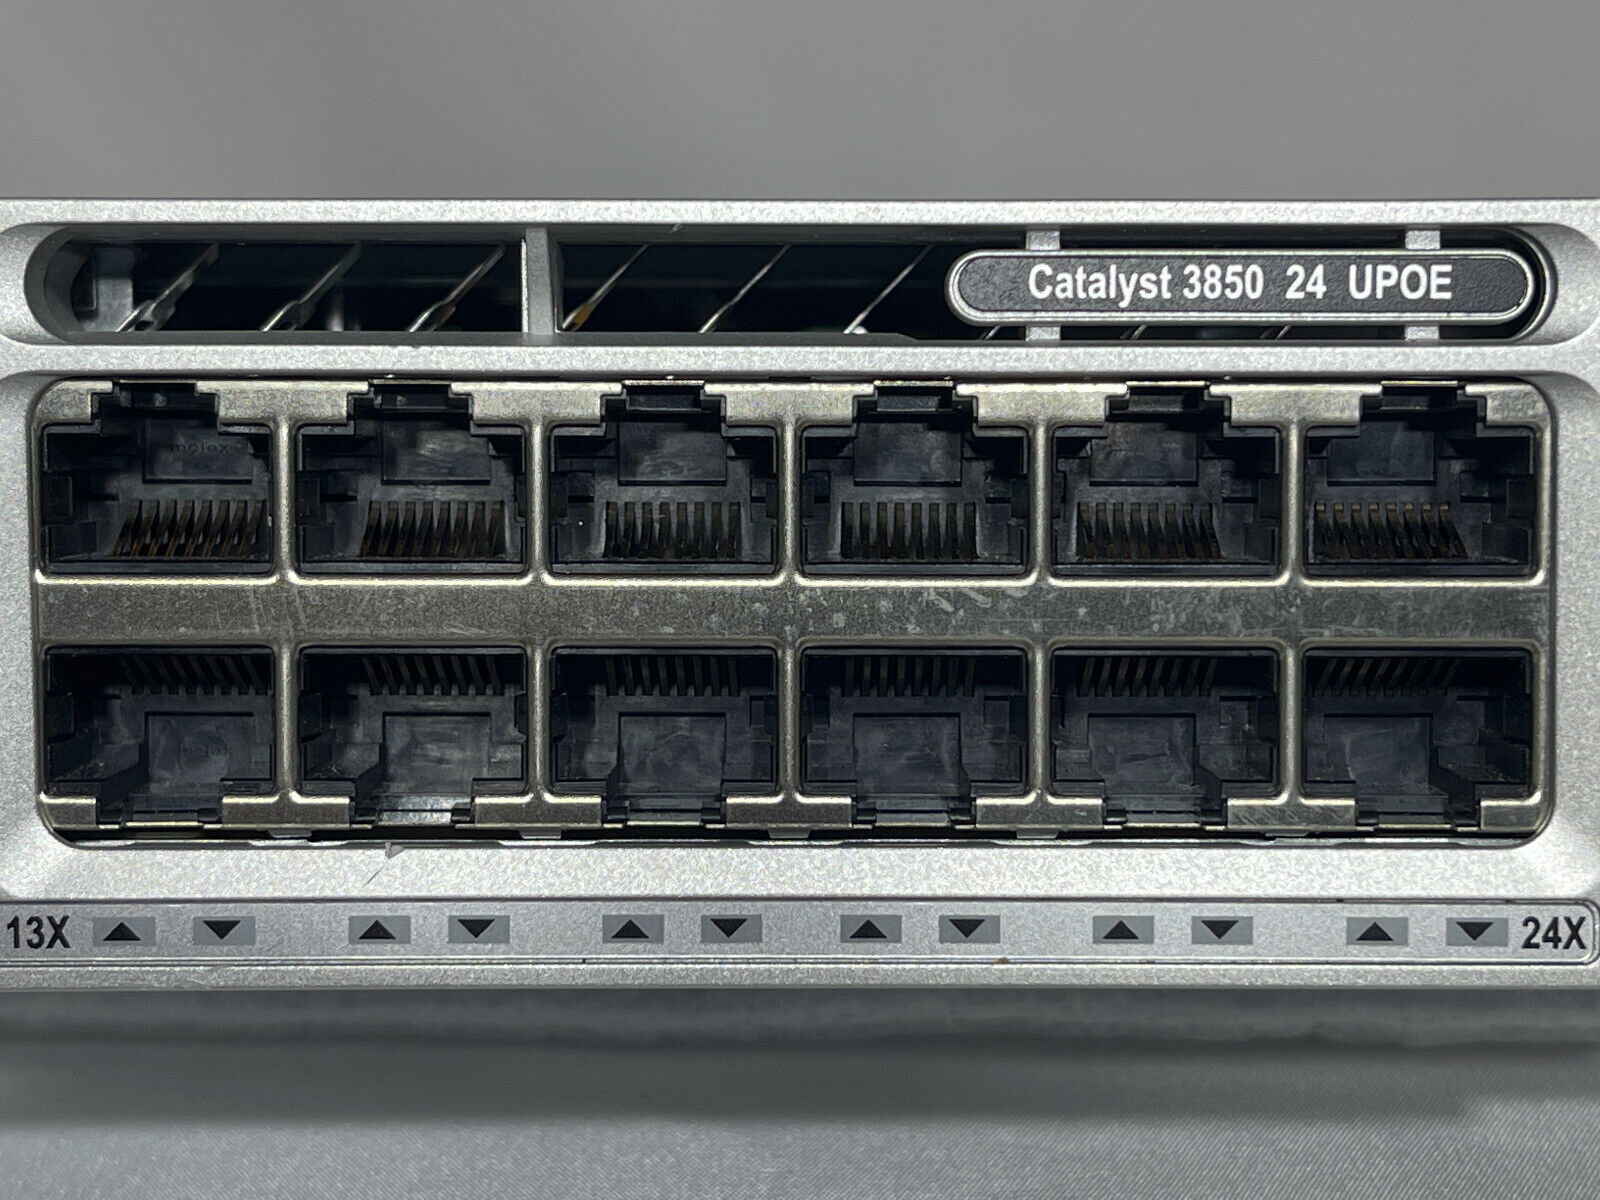 Cisco Catalyst WS-C3850-24U 24-Port 1GbE UPoE Ethernet Switch 2x 1100W PSU Ears.